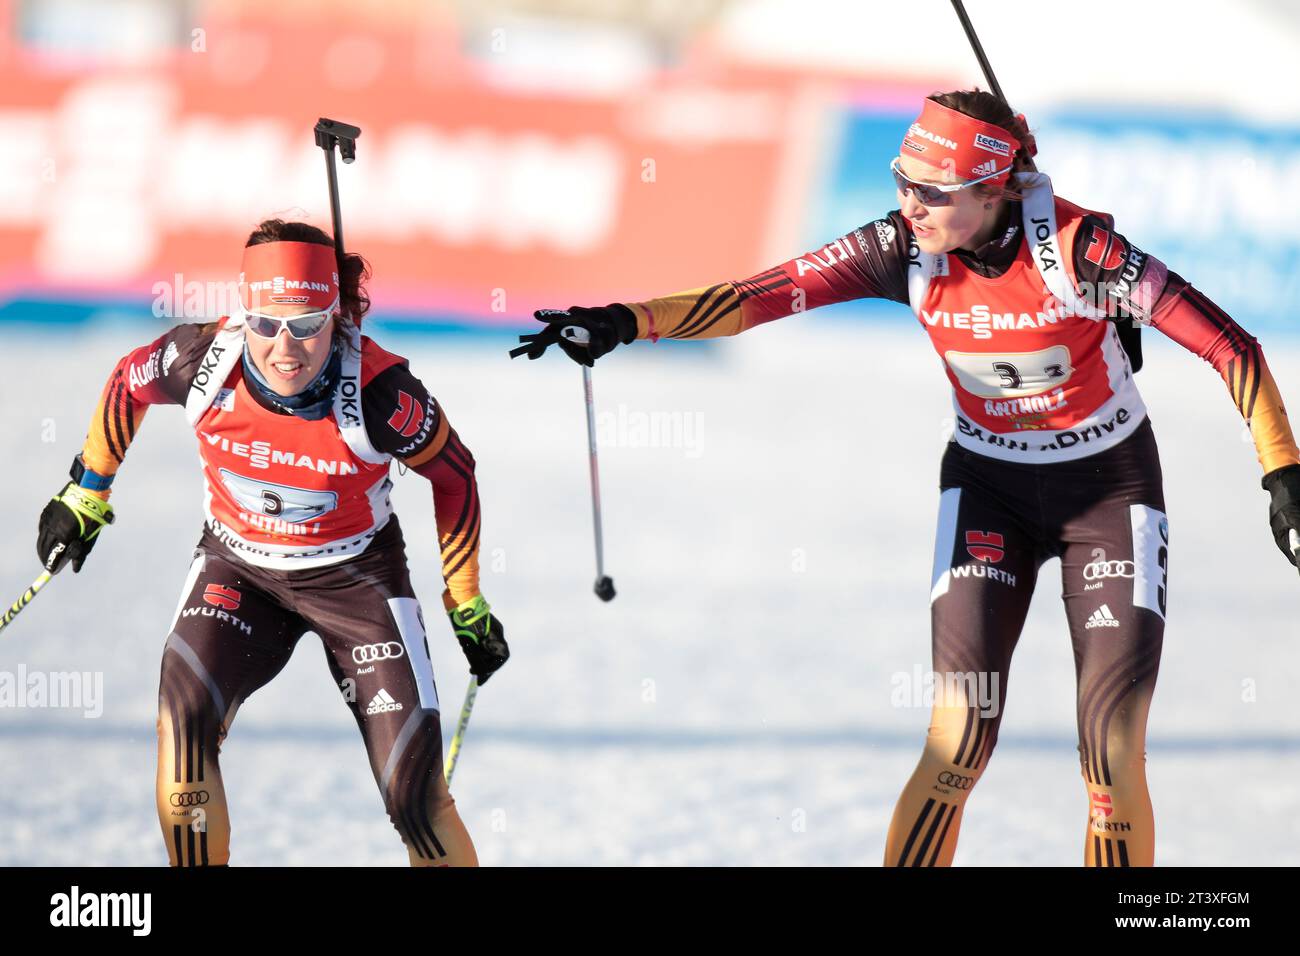 Laura Dahlmeier und Luise Kummer beim Wechsel Biathlon Welt Cup 4 x 6 KM Staffel der Frauen in Antholz, Italien am 25.01.2015 Stock Photo